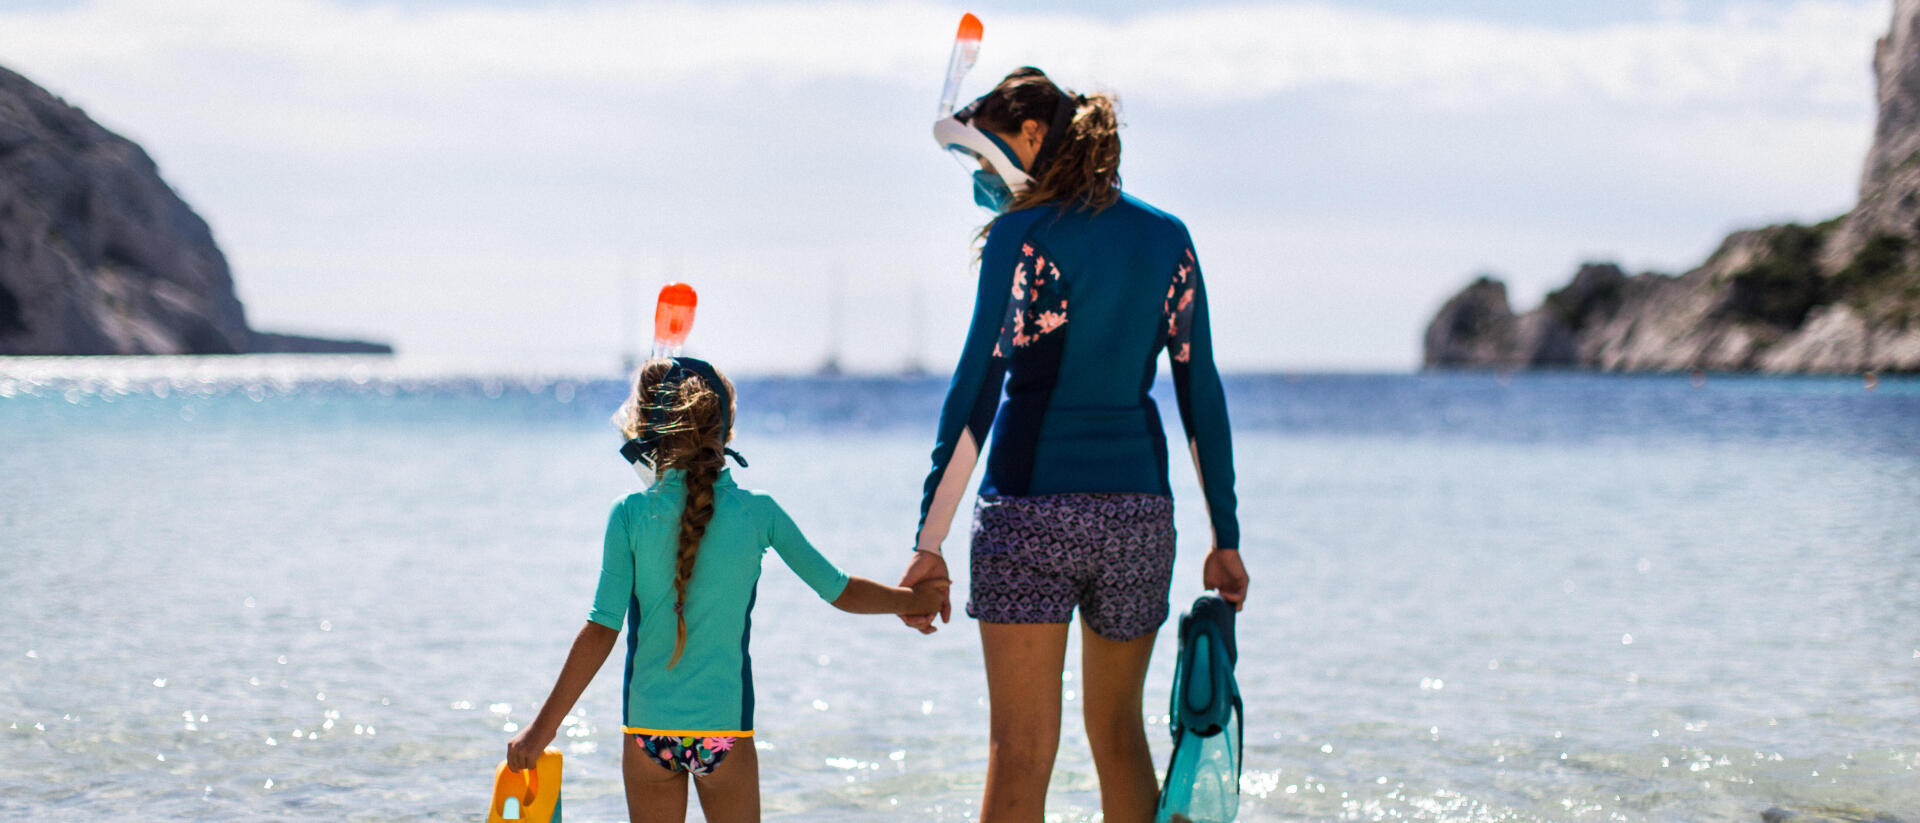 Pratiquer le snorkeling dans le plus grand respect environnemental